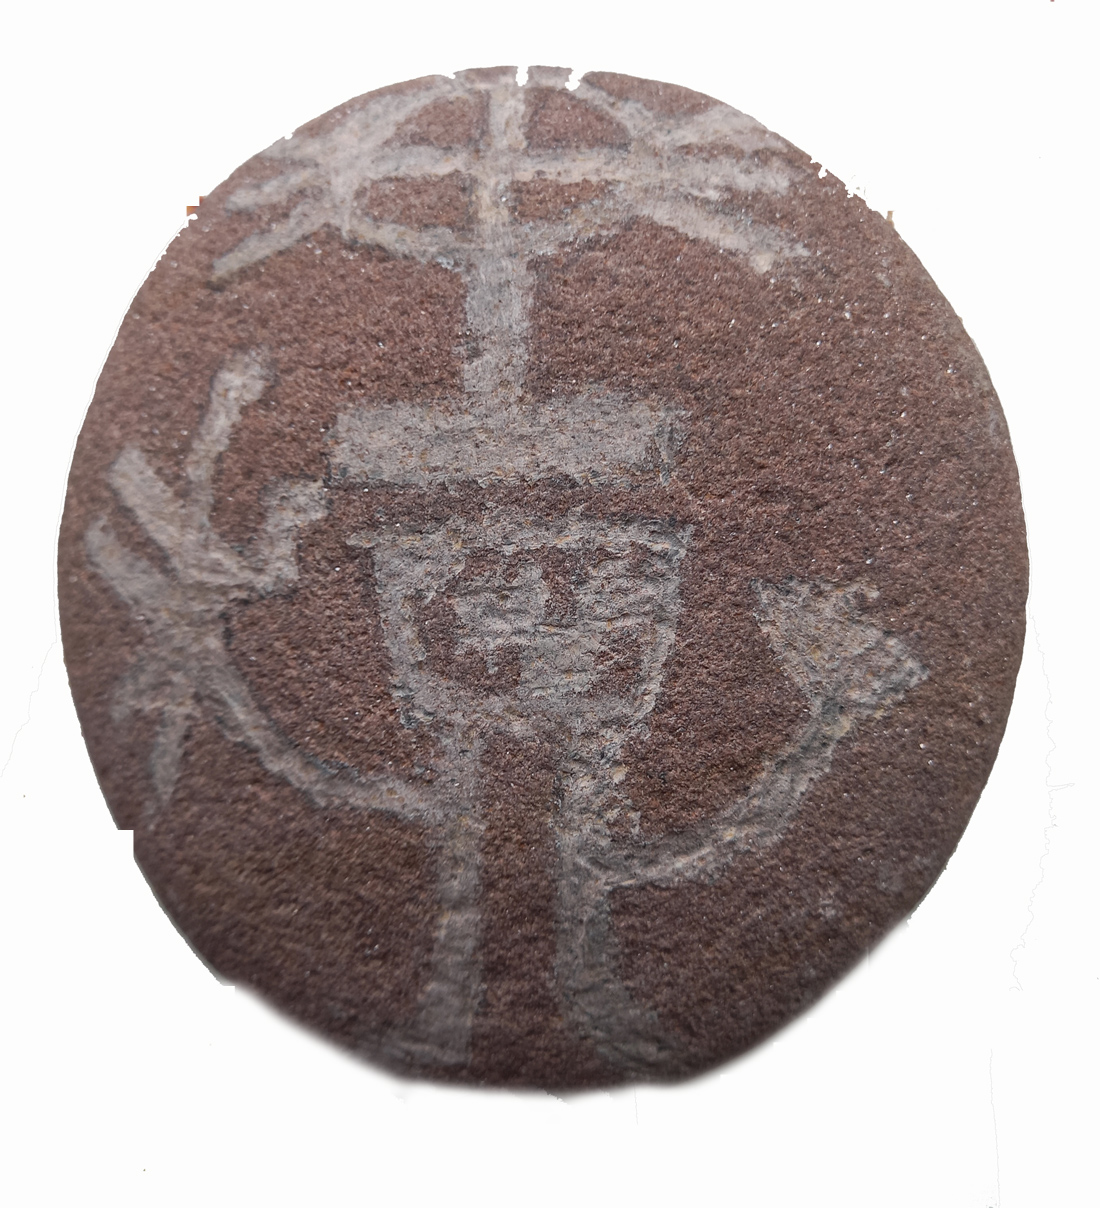 Petroglifo gallego grabado sobre piedra, elaborado por los alumnos de 1º Educación Secundaria del Centro Educativo Gençana, dentro del proyecto "Abuelísimos" sobre la prehistoria